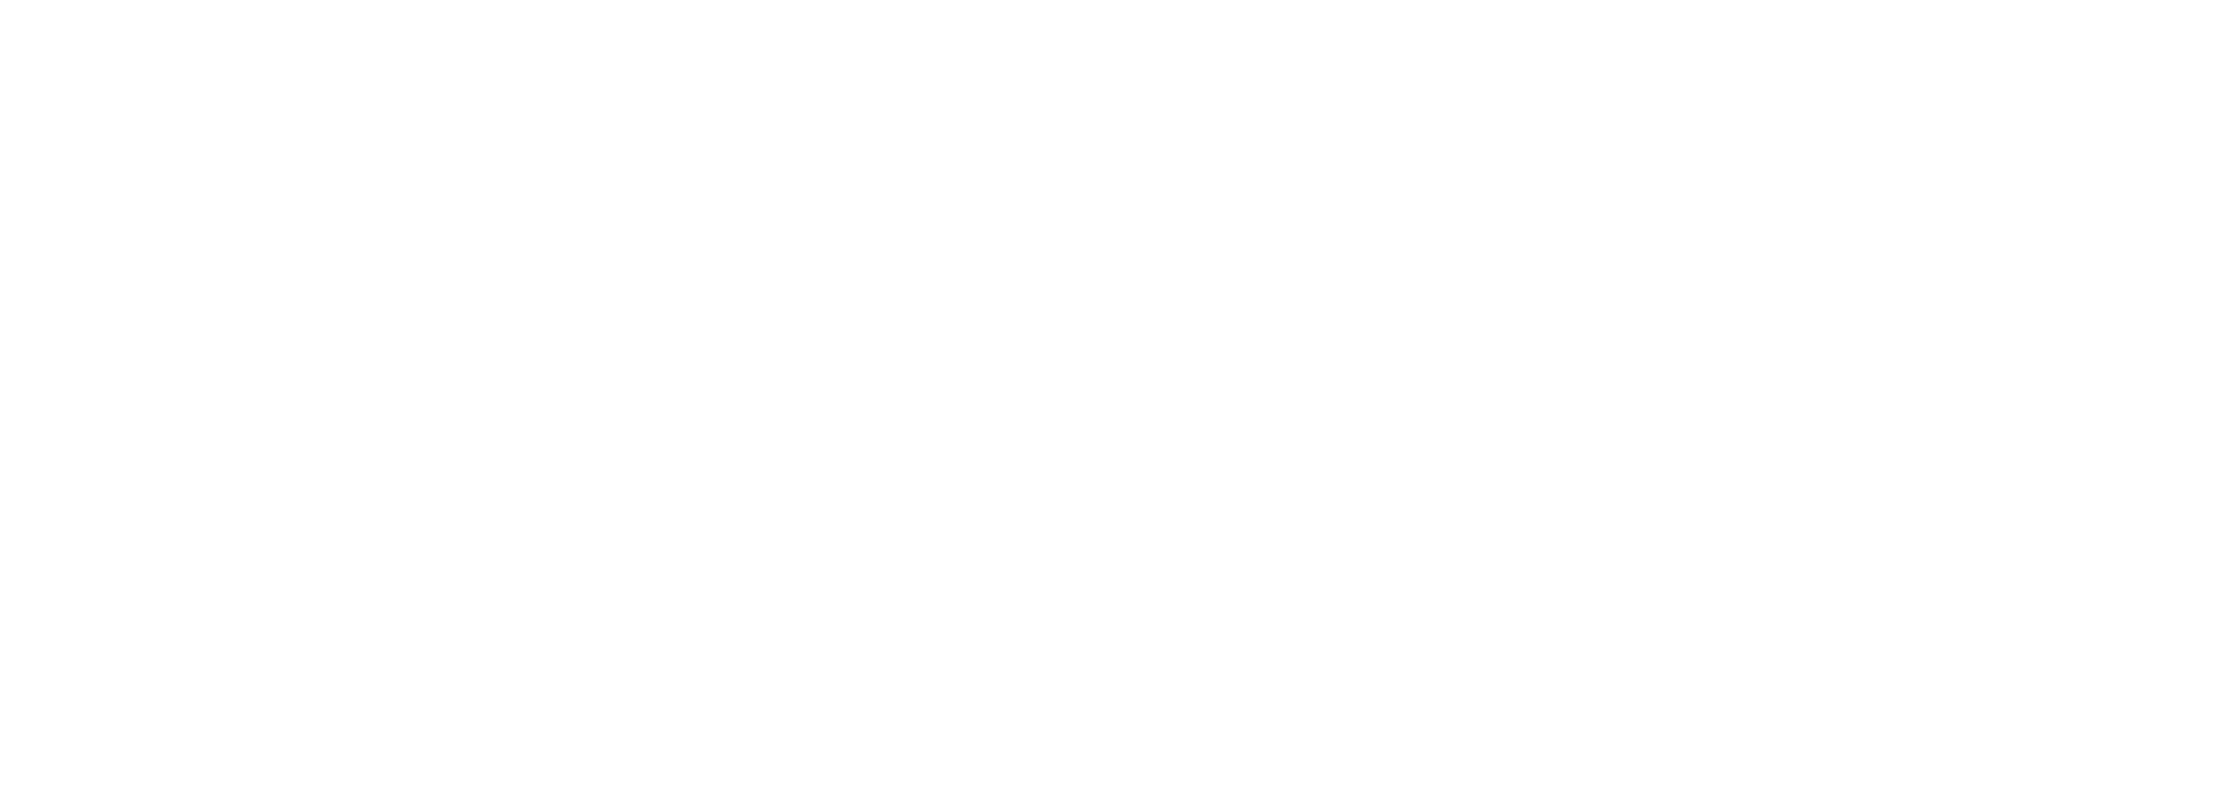 Banner Marcel Aulbach - Auf der Webseite www.aschaffenbuch.de